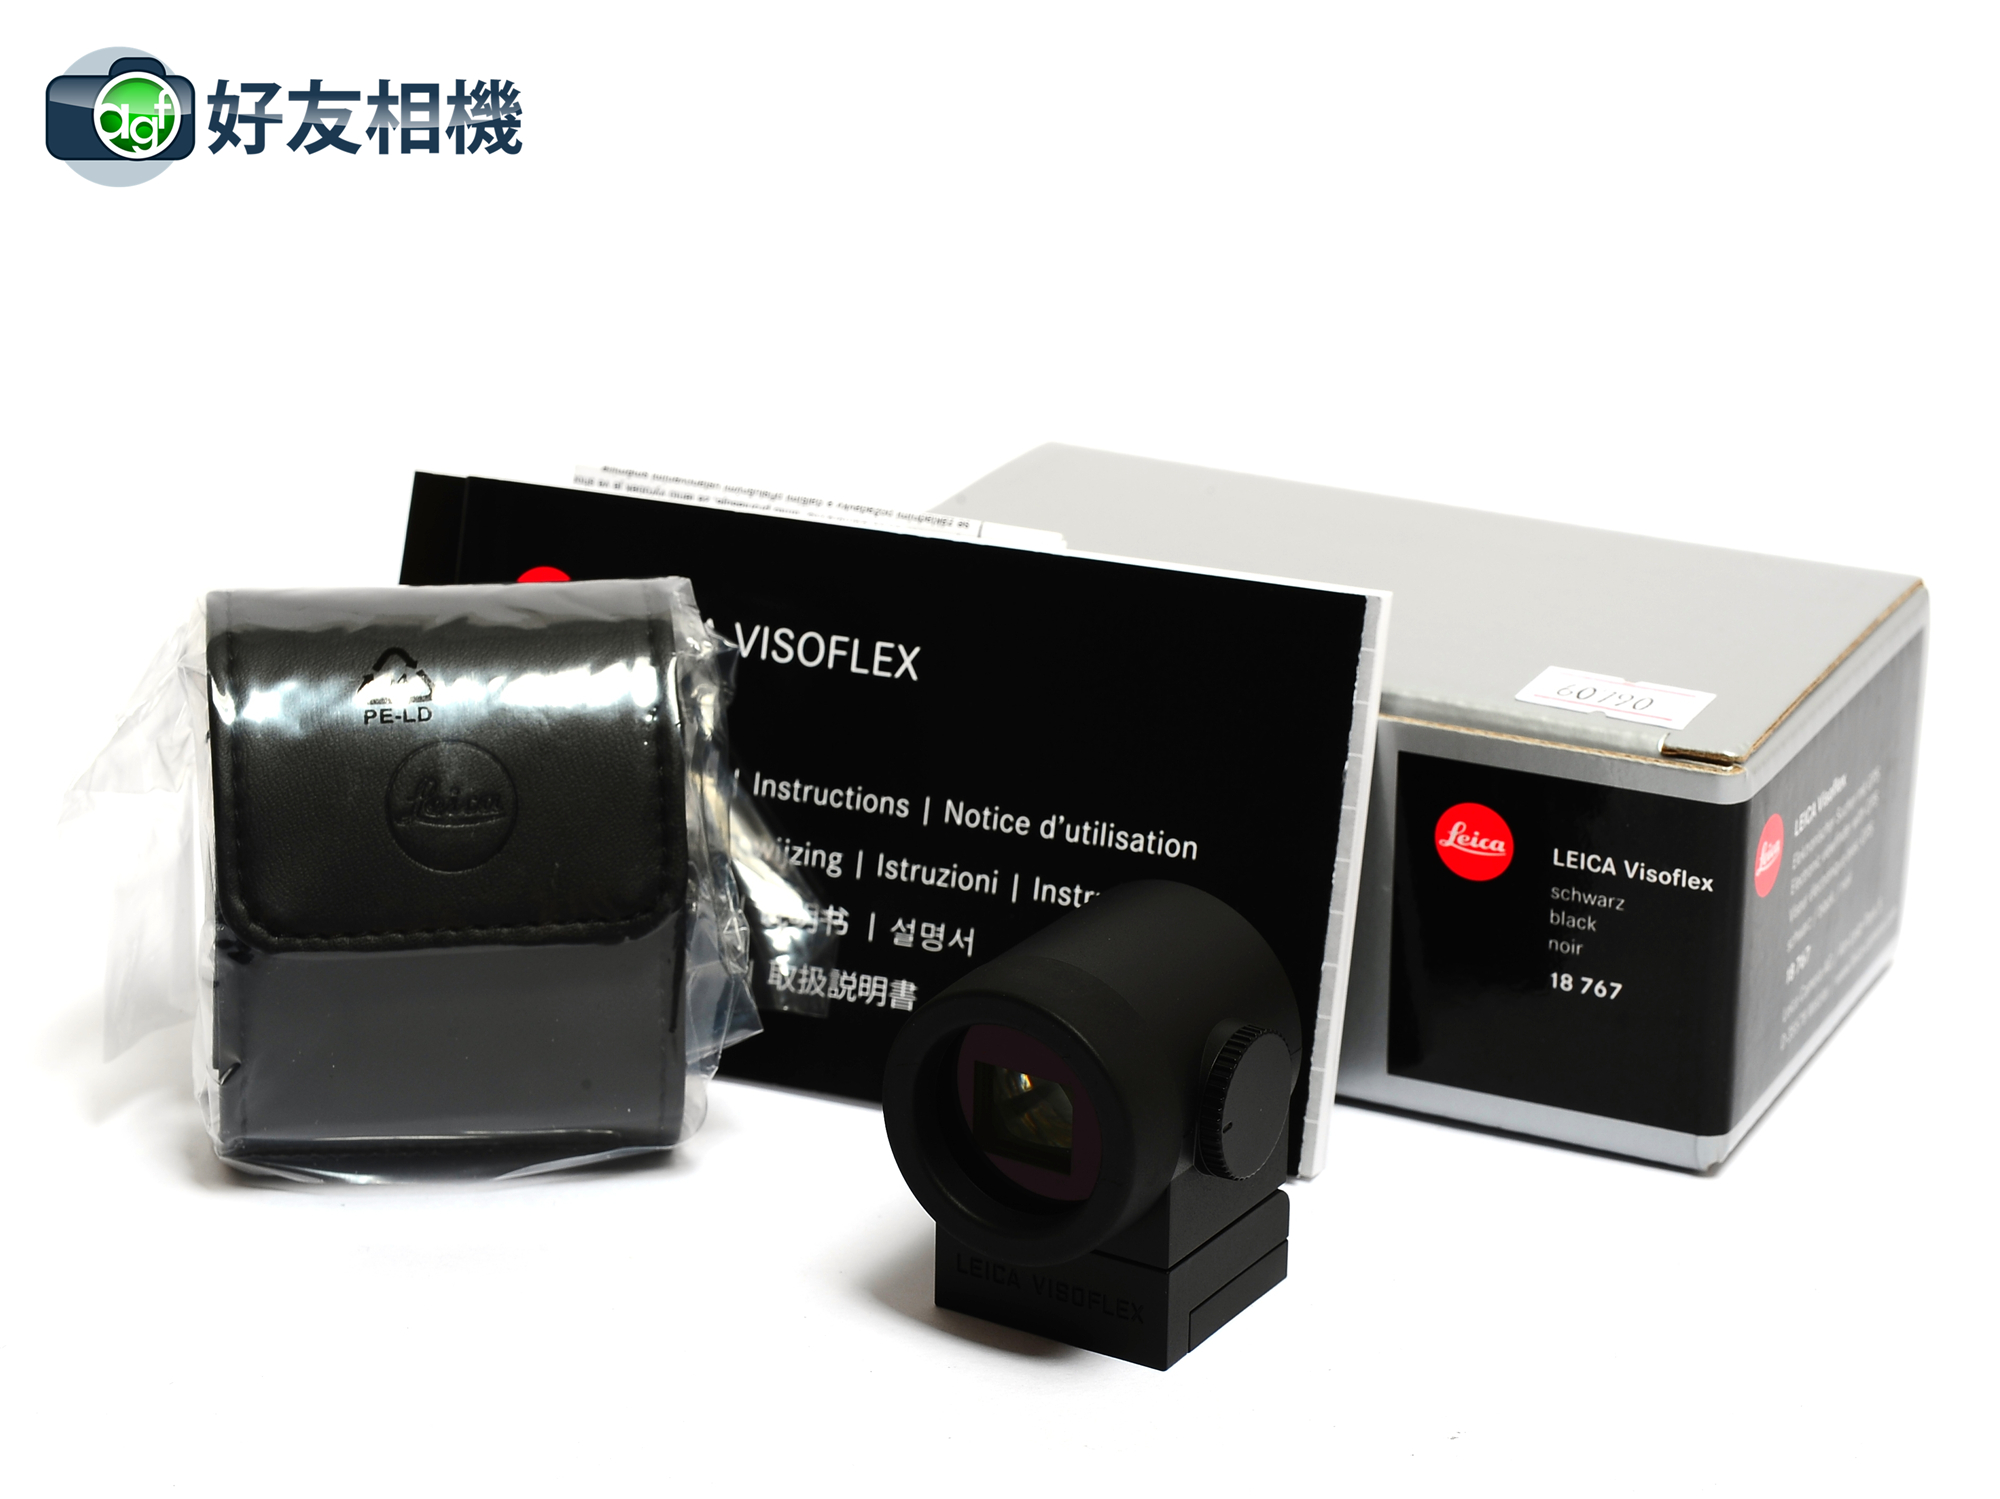 徕卡 Visoflex 电子取景器 M10 TL X相机用 18767 *全新*